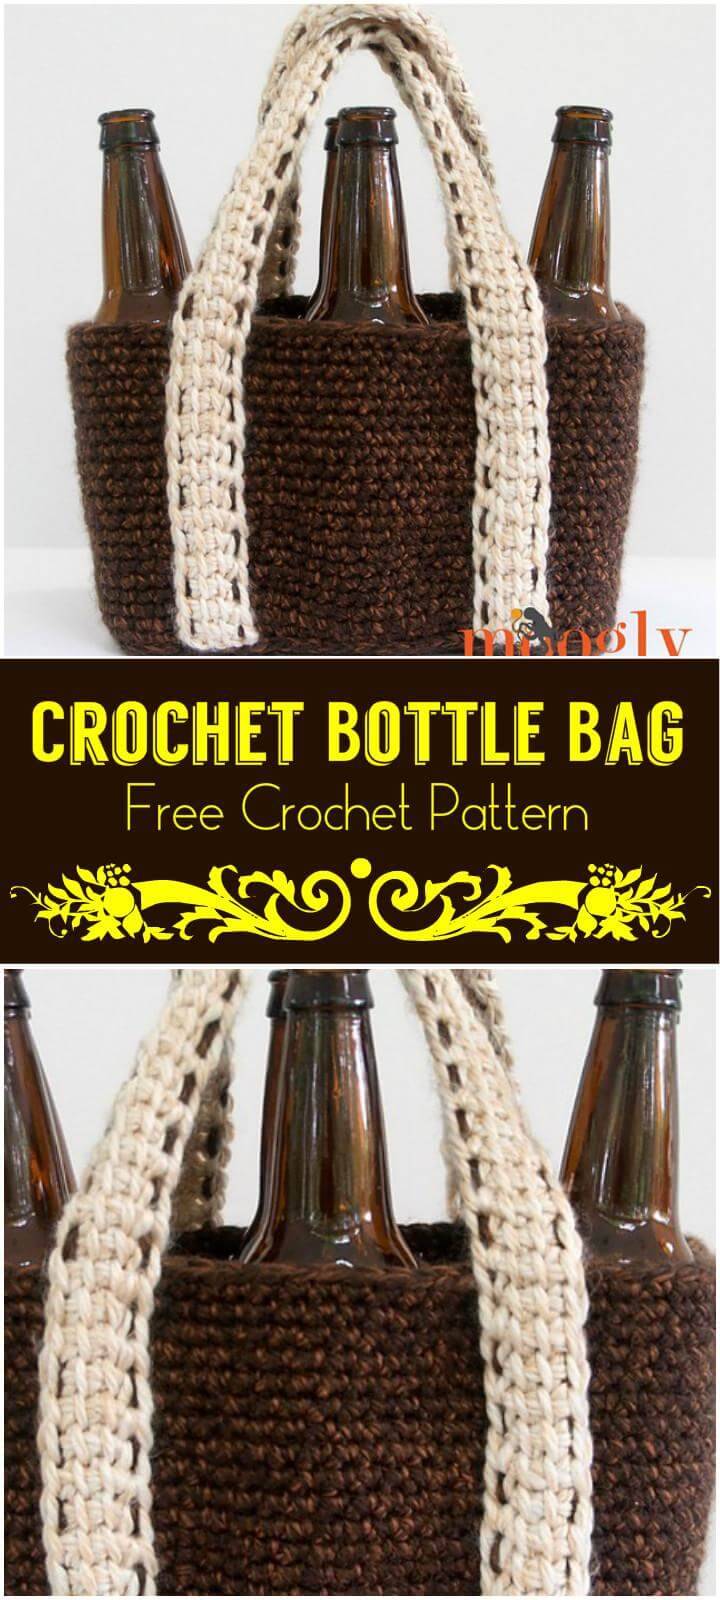 Crochet Bottle Bag Free Crochet Pattern